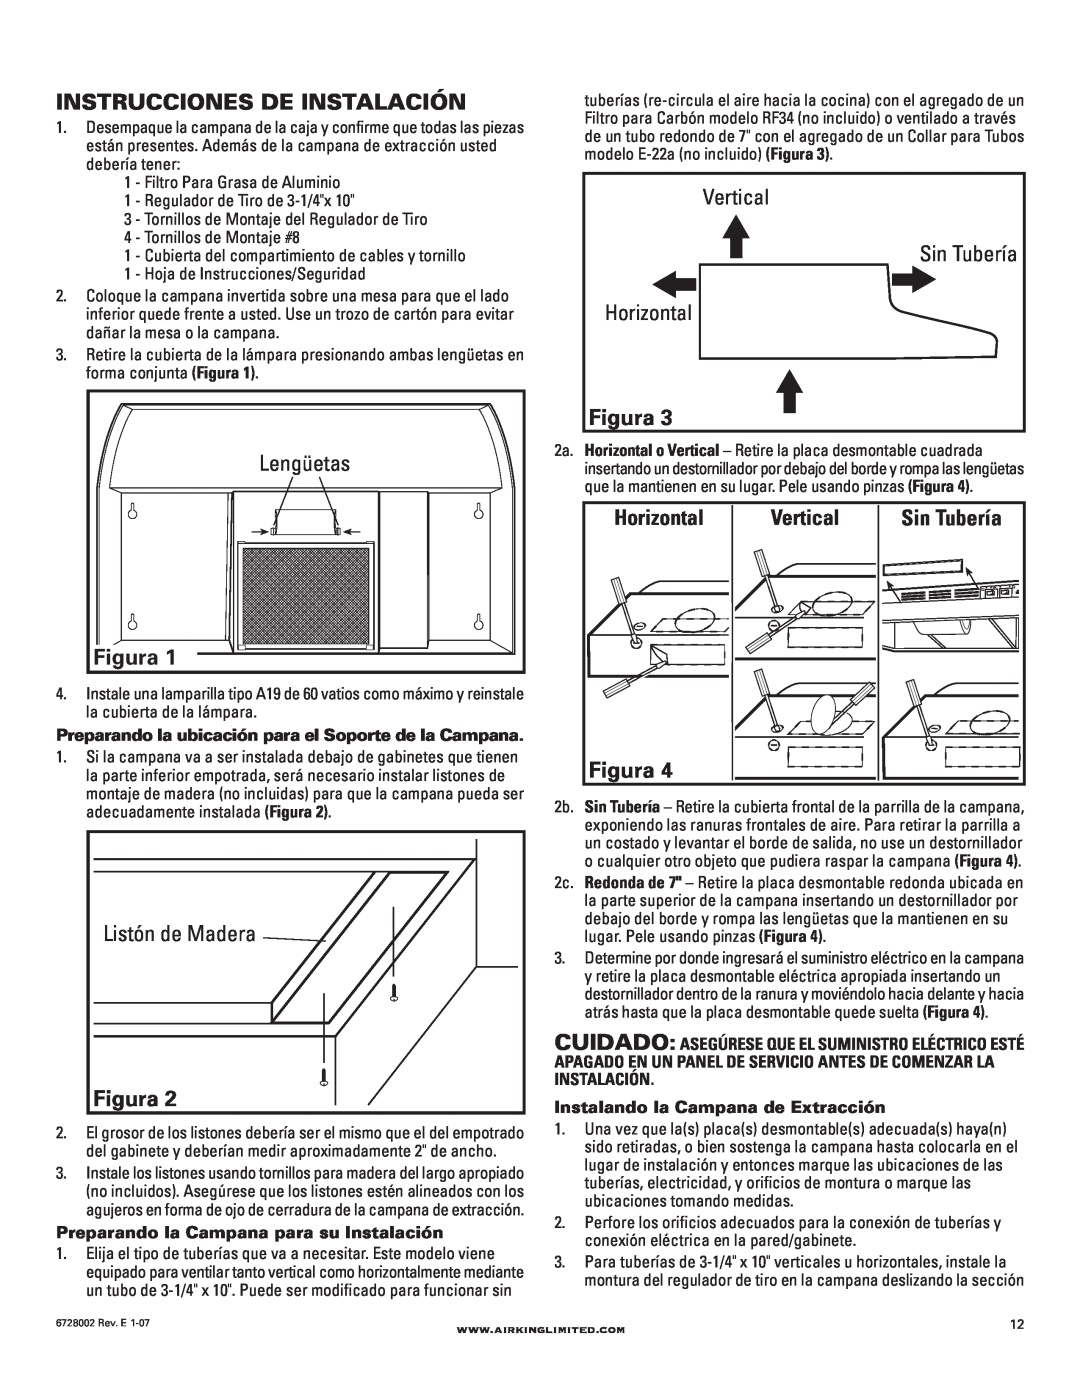 Air King Ventilation Hood manual Instrucciones De Instalación, Figura, Lengüetas, Sin Tubería, Listón de Madera, Horizontal 